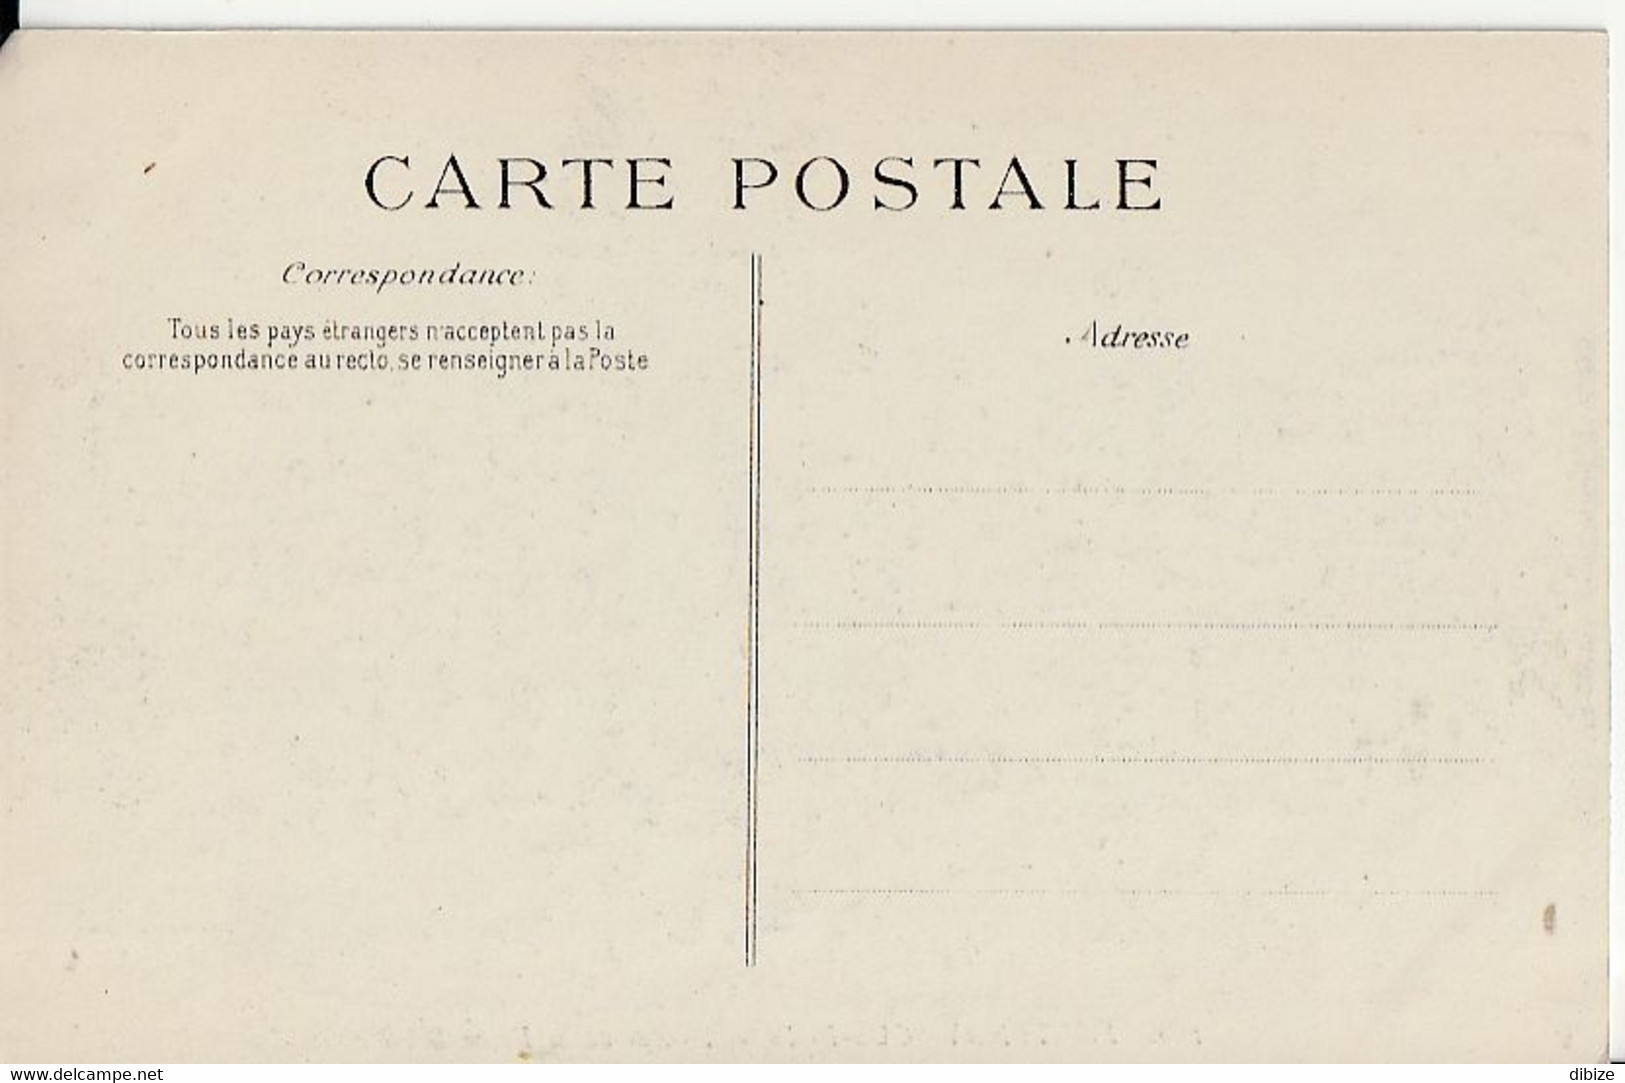 France. Carte Postale. Fontenay-Sous-Bois. Avenue De La Dame Blanche. Calèches. Etat Moyen. - Fontenay Sous Bois